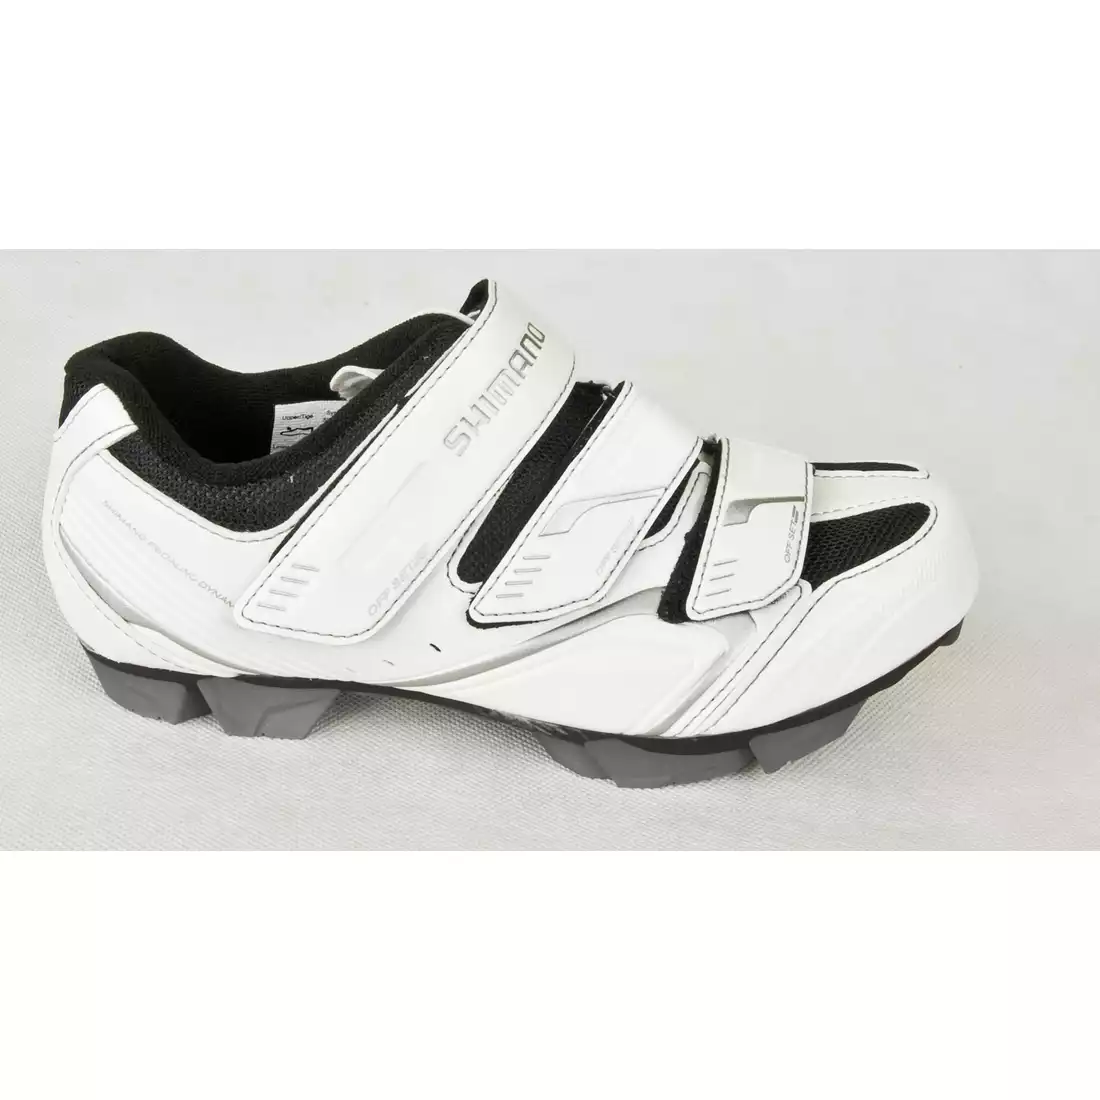 SHIMANO SH-WM52 - damskie buty rowerowe, białe